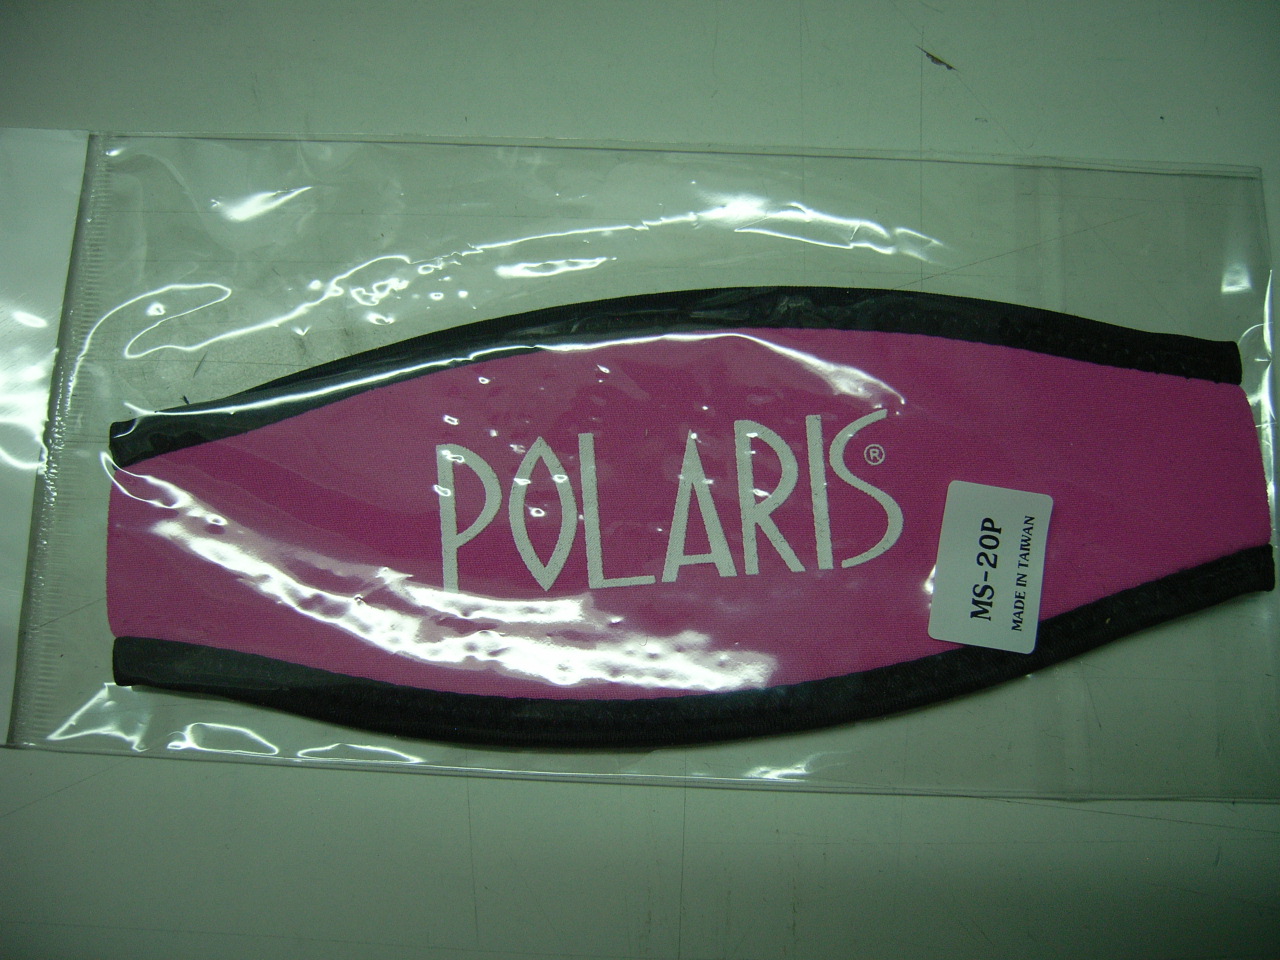 Neopren Maskenbandhülle Polaris in verschiedenen Farben